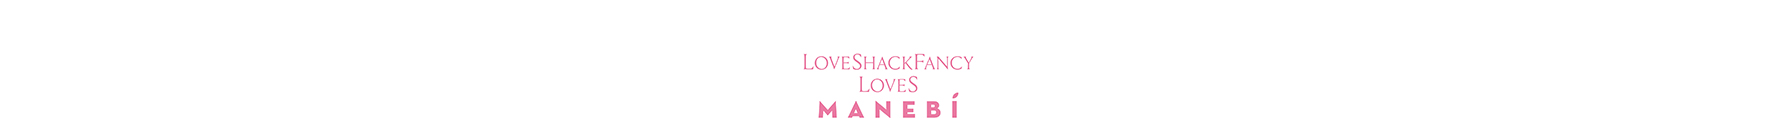 LoveShackFancy loves Manebí